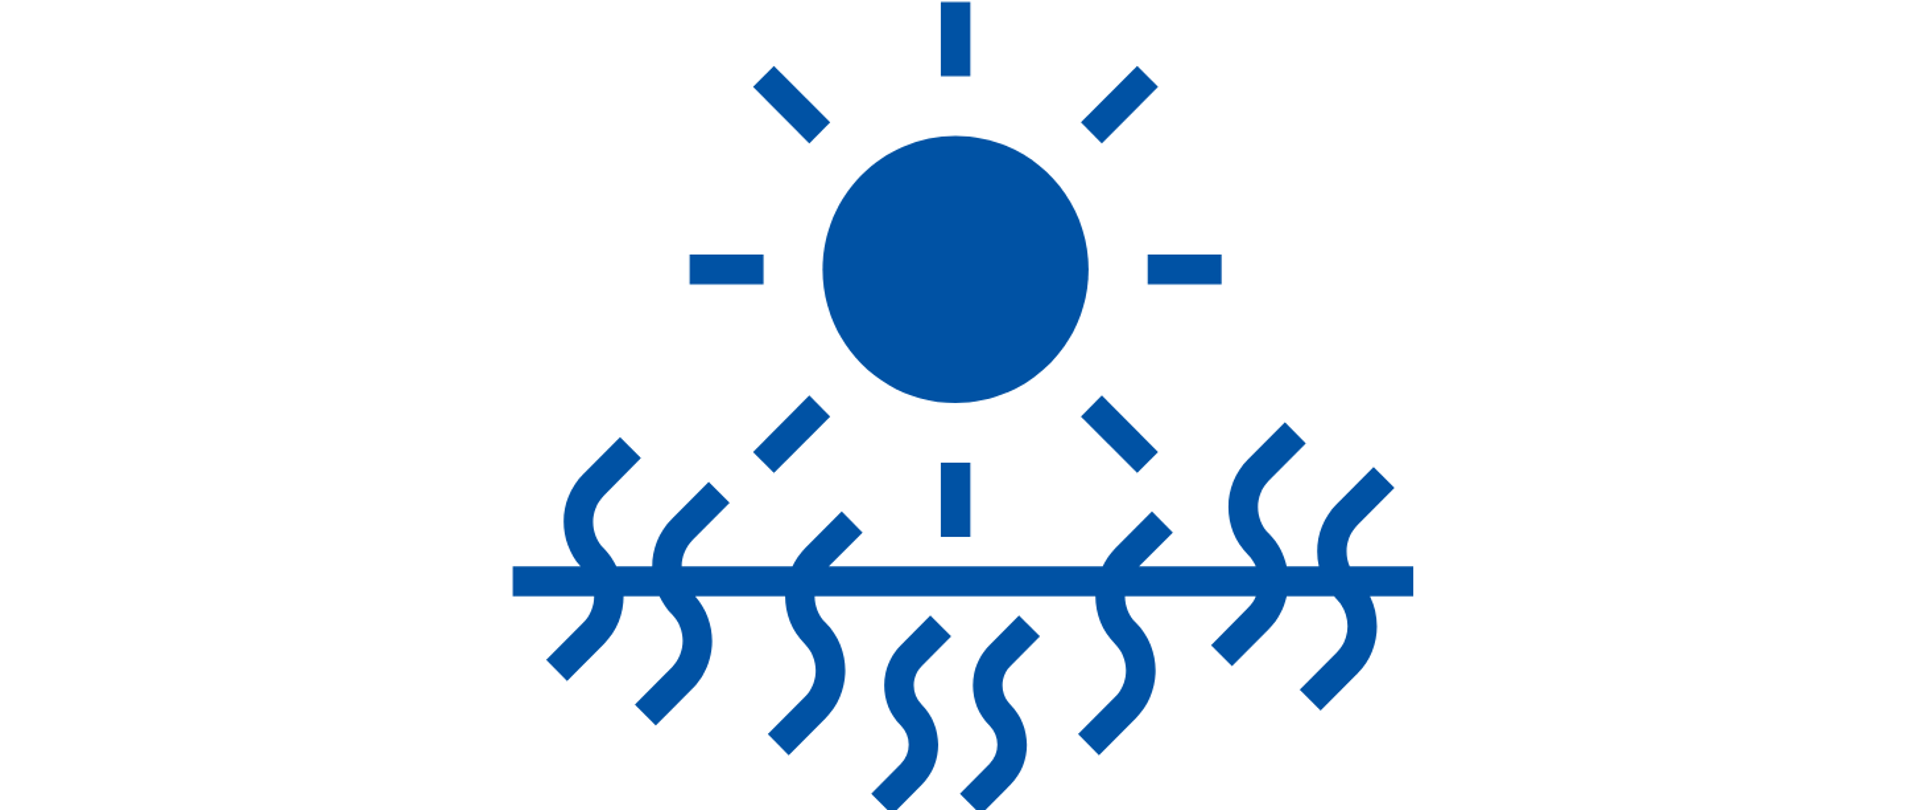 Niebieska ikona słońca symbolizująca upały